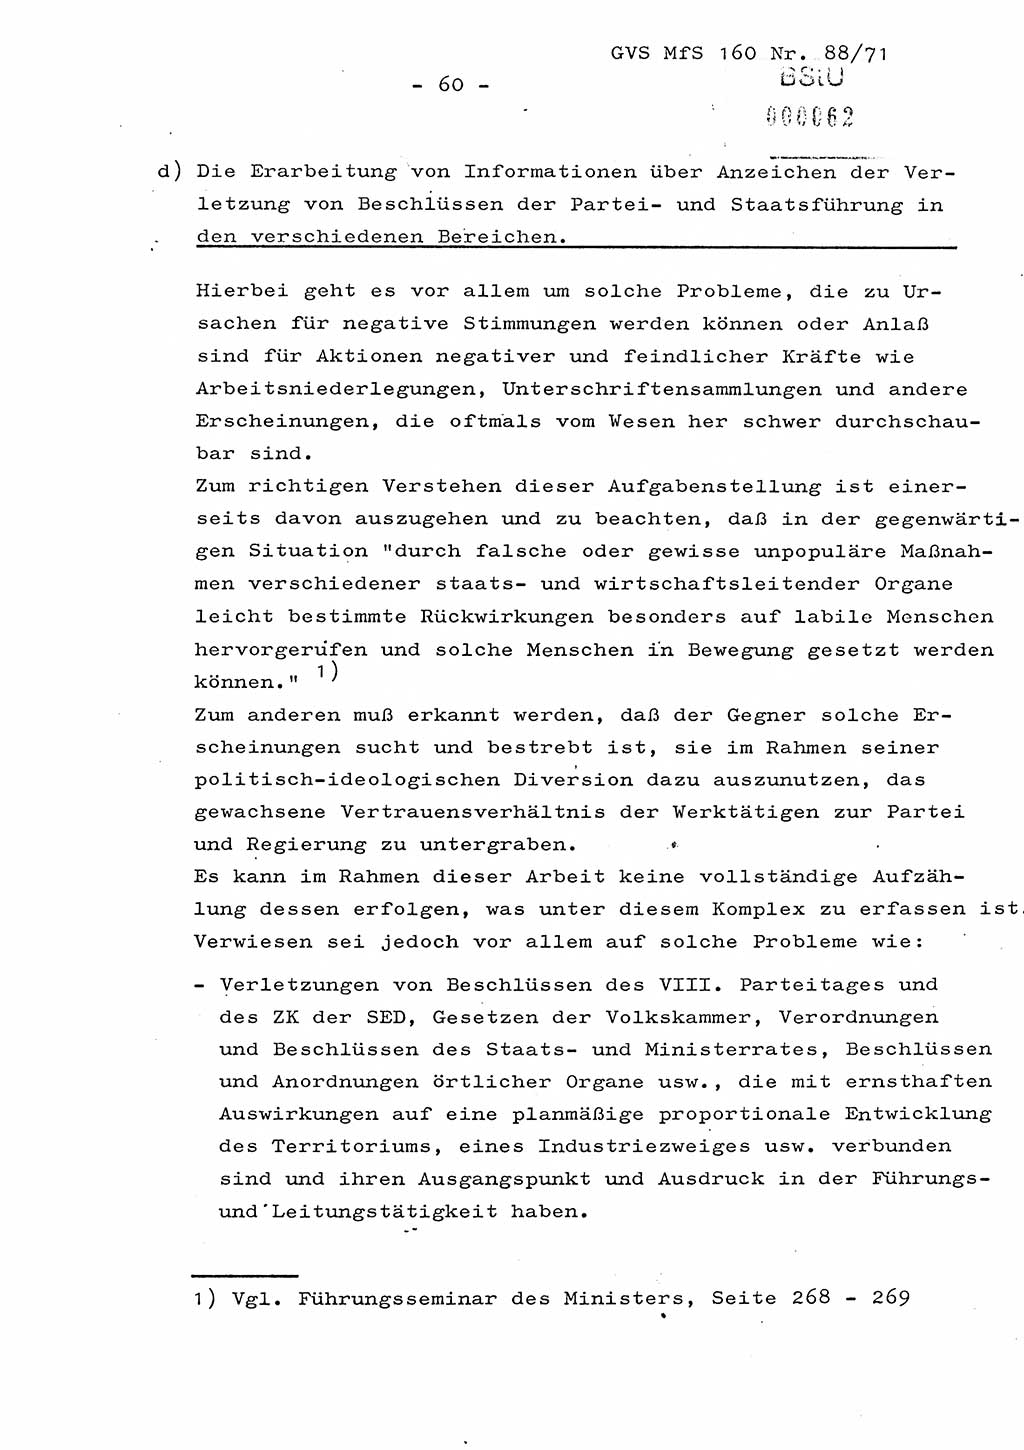 Dissertation Oberstleutnant Josef Schwarz (BV Schwerin), Major Fritz Amm (JHS), Hauptmann Peter Gräßler (JHS), Ministerium für Staatssicherheit (MfS) [Deutsche Demokratische Republik (DDR)], Juristische Hochschule (JHS), Geheime Verschlußsache (GVS) 160-88/71, Potsdam 1972, Seite 60 (Diss. MfS DDR JHS GVS 160-88/71 1972, S. 60)